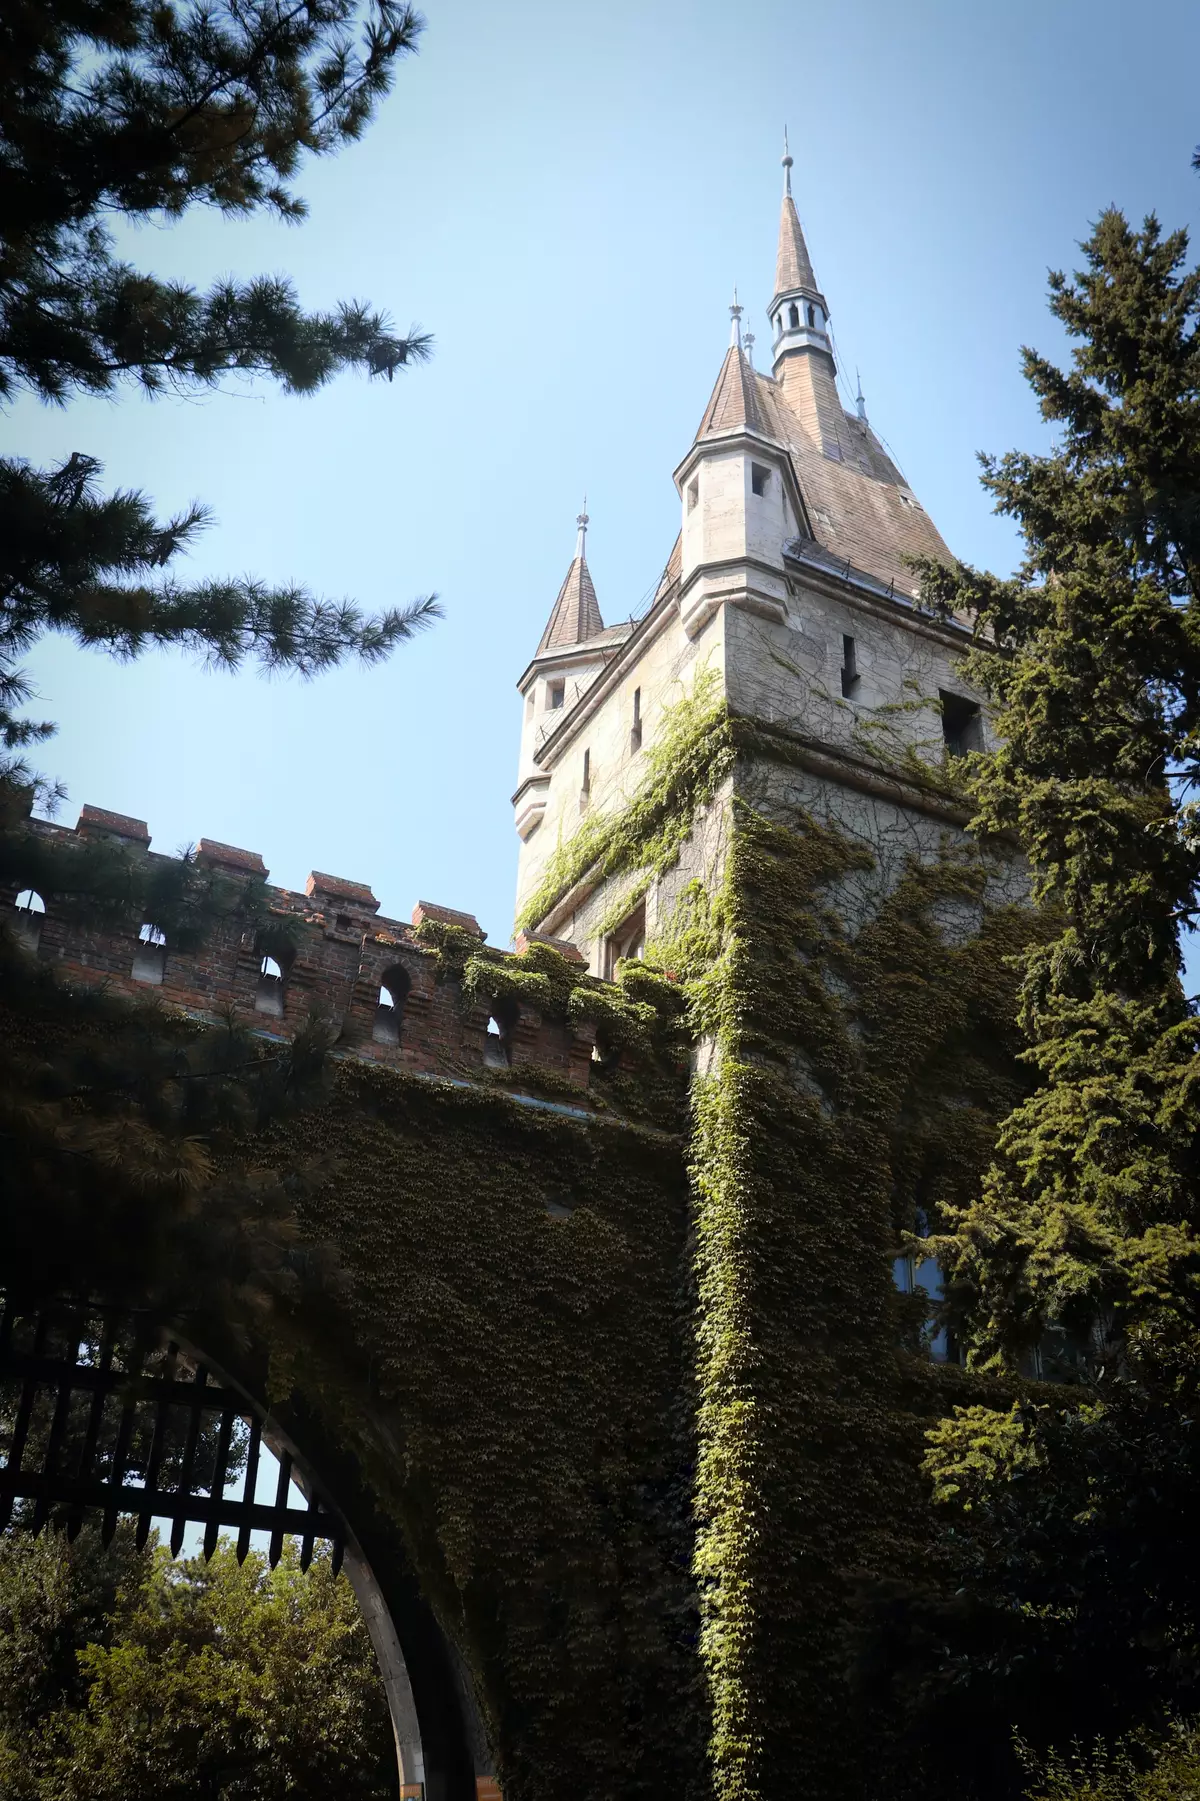 Vajdahunyad Castle, Budapest